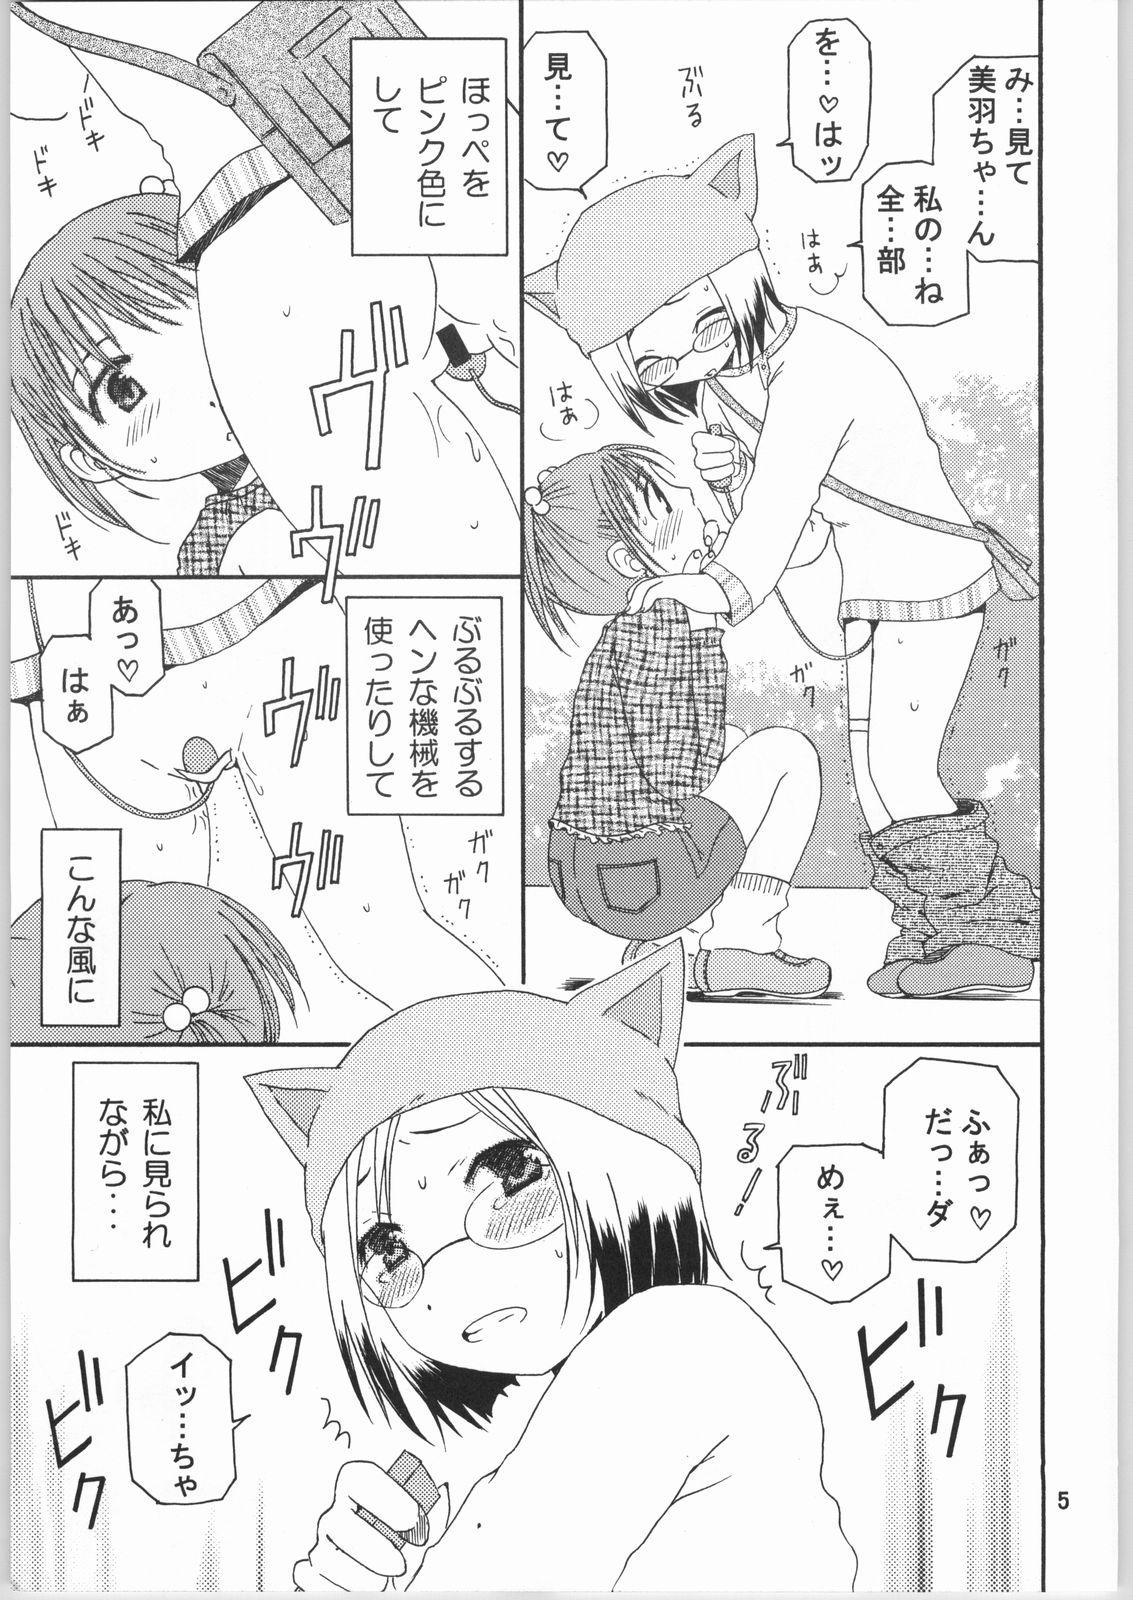 Ass Lick Strawberry Short Cake - Ichigo mashimaro Marido - Page 4